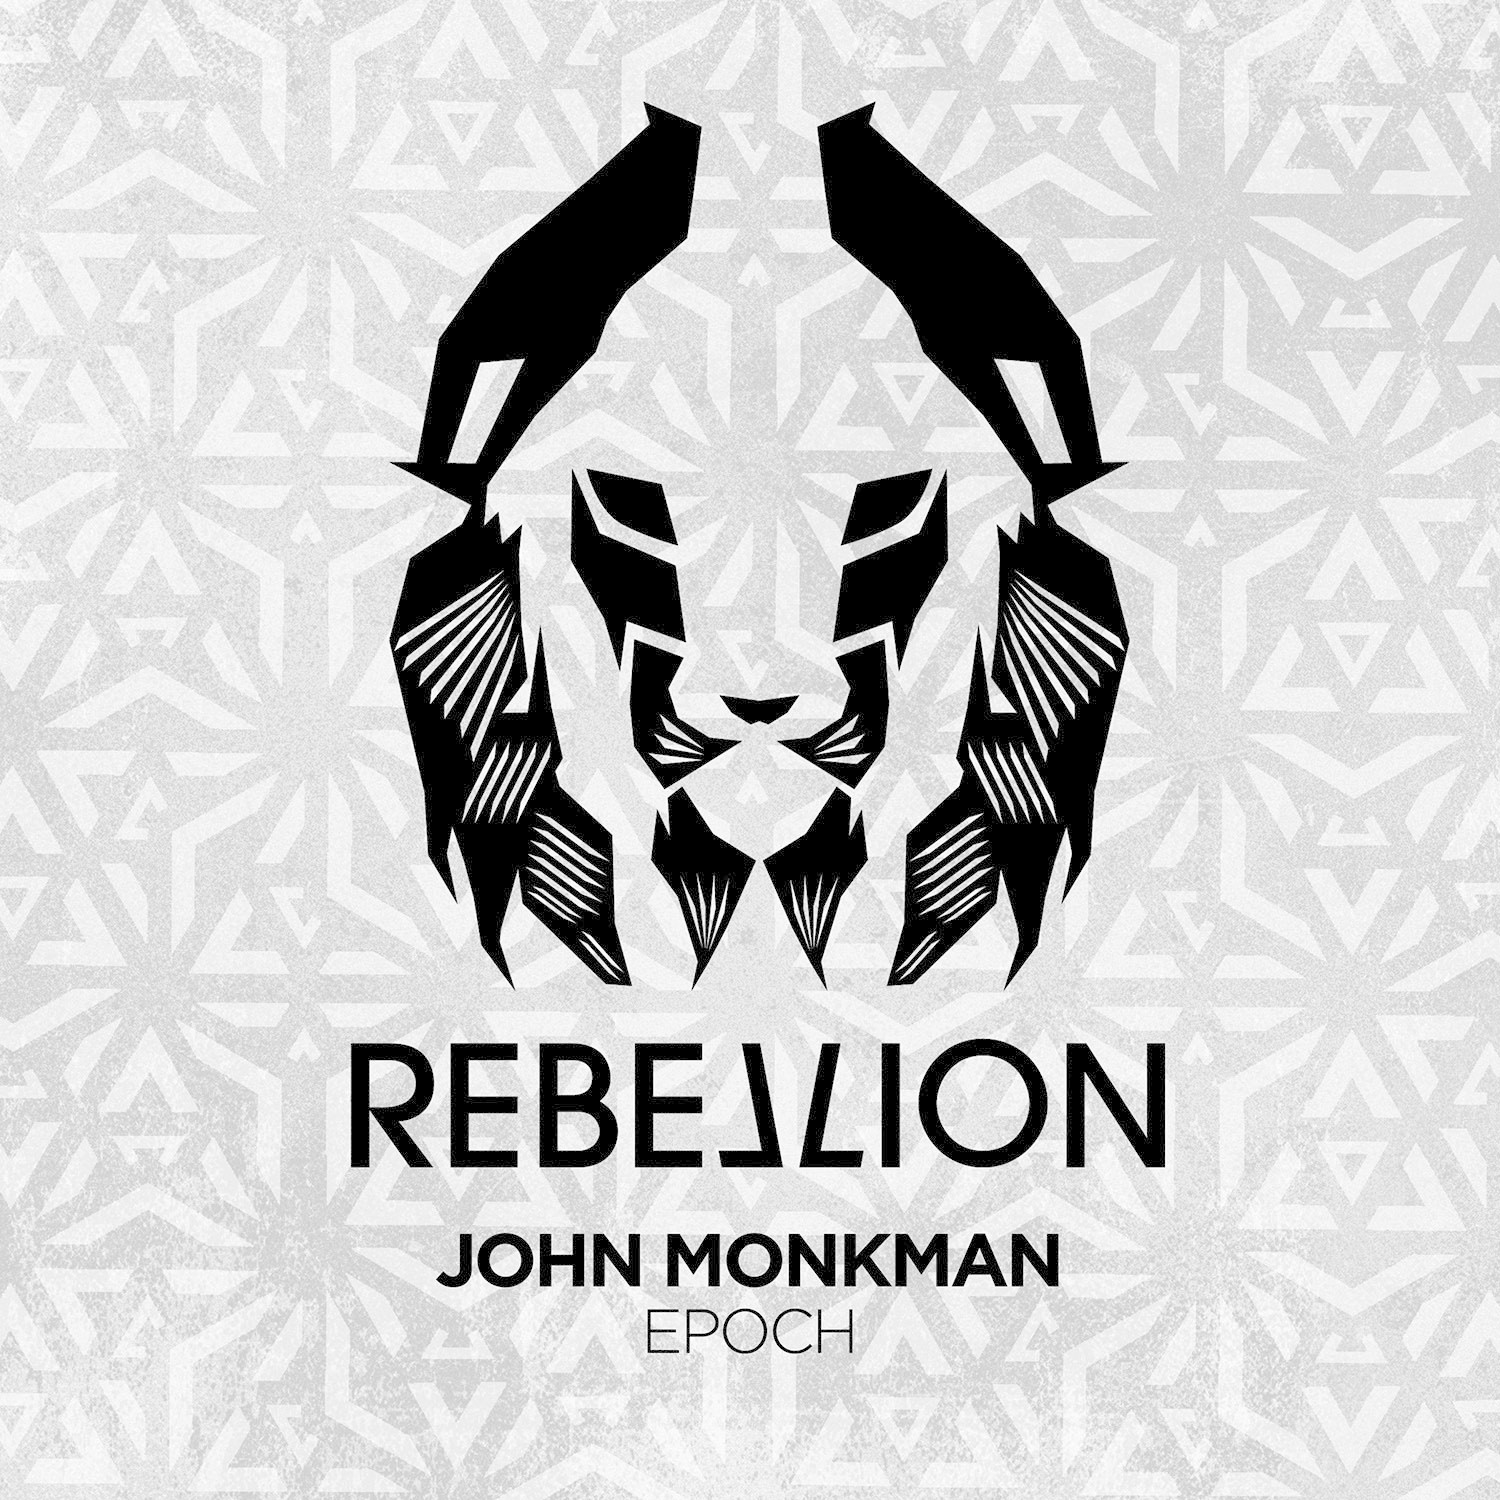 John Monkman - EPOCH / Rebellion